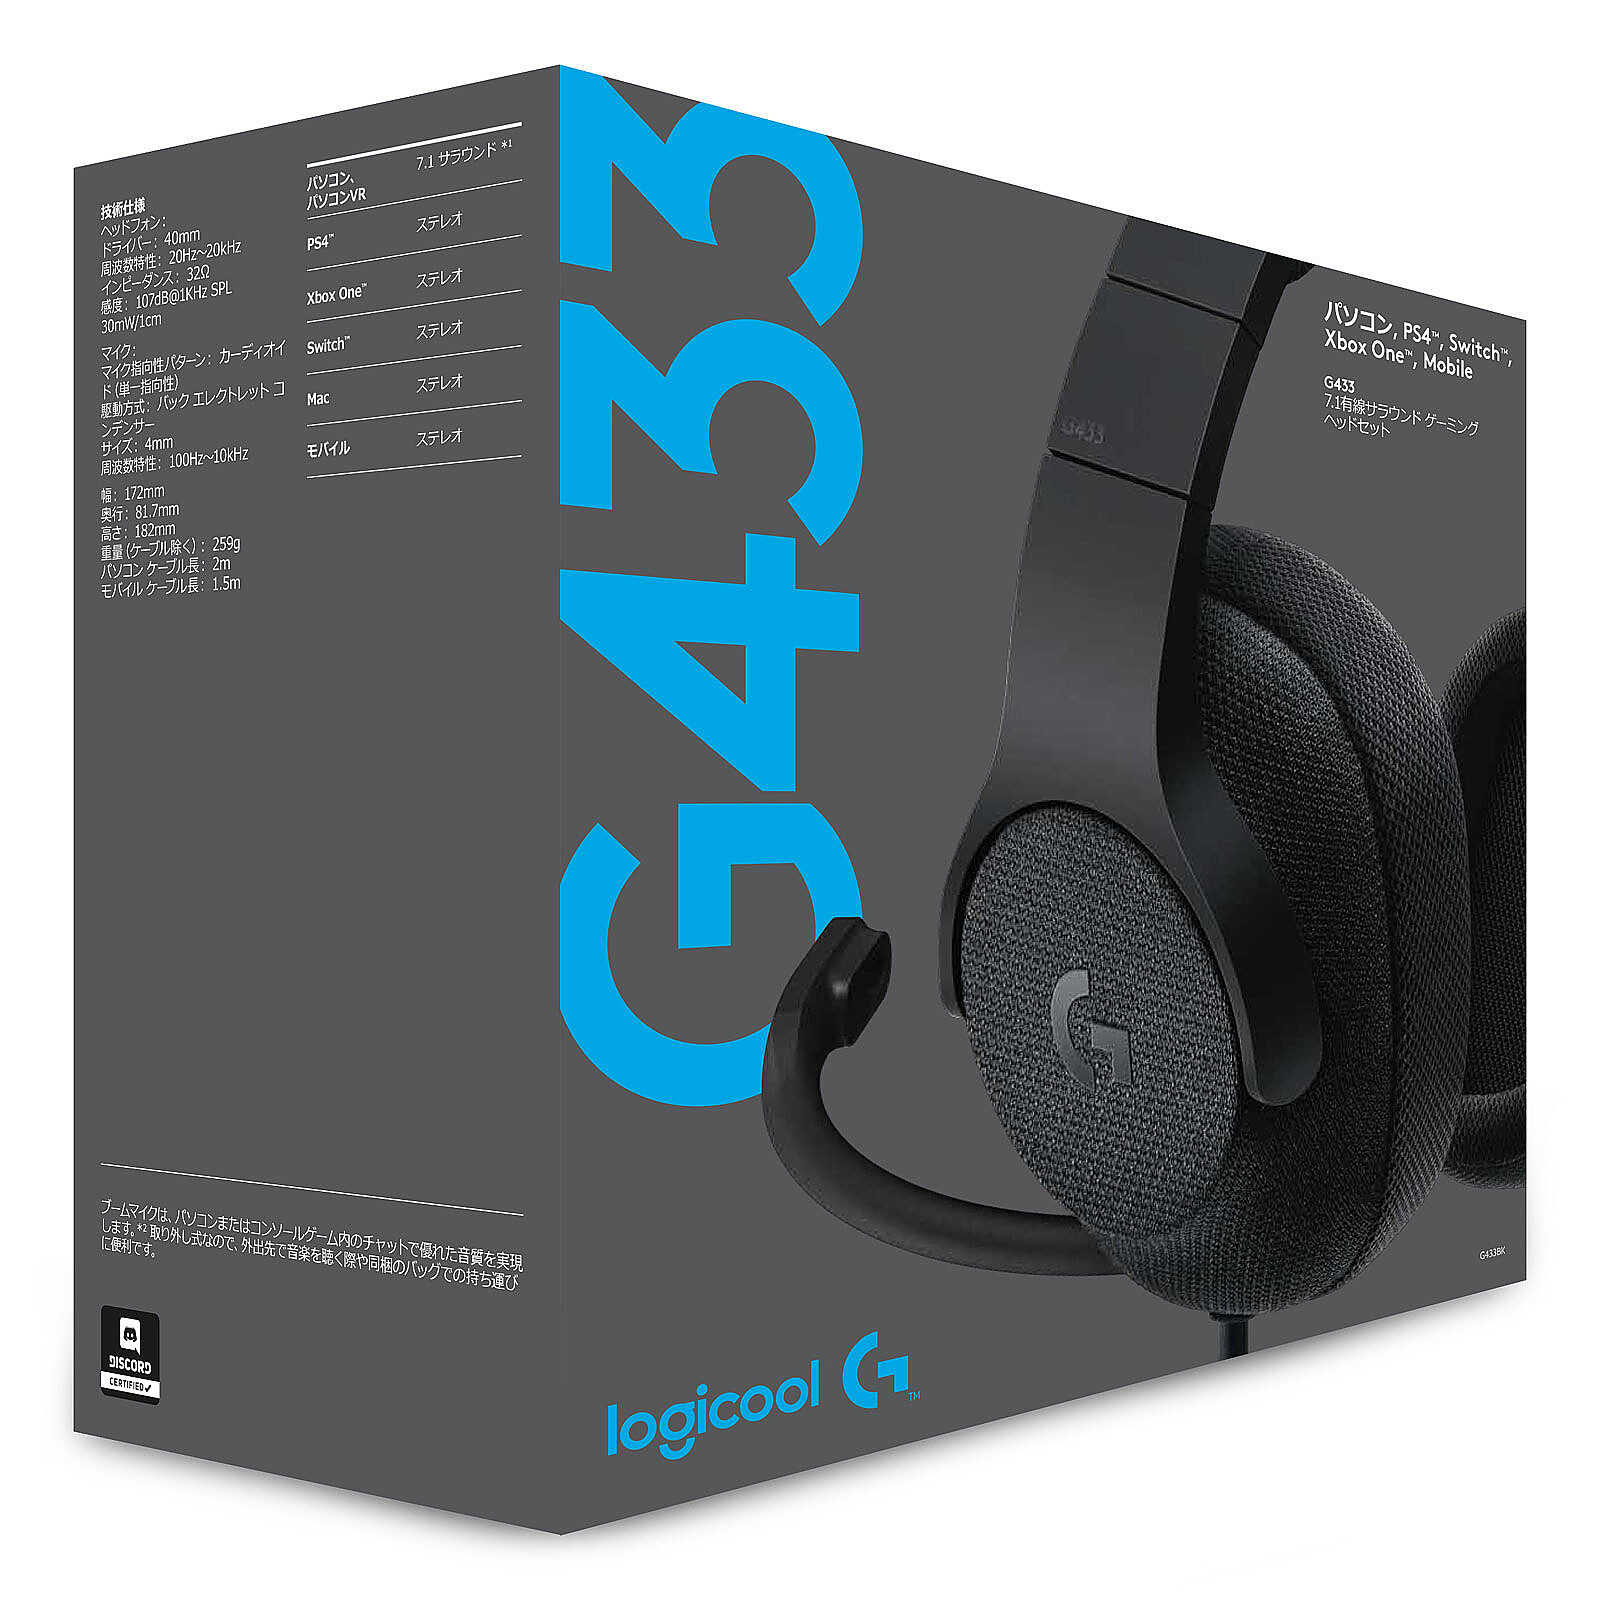 Astro A10 Xbox Negro (2ª generación) - Auriculares microfono - LDLC